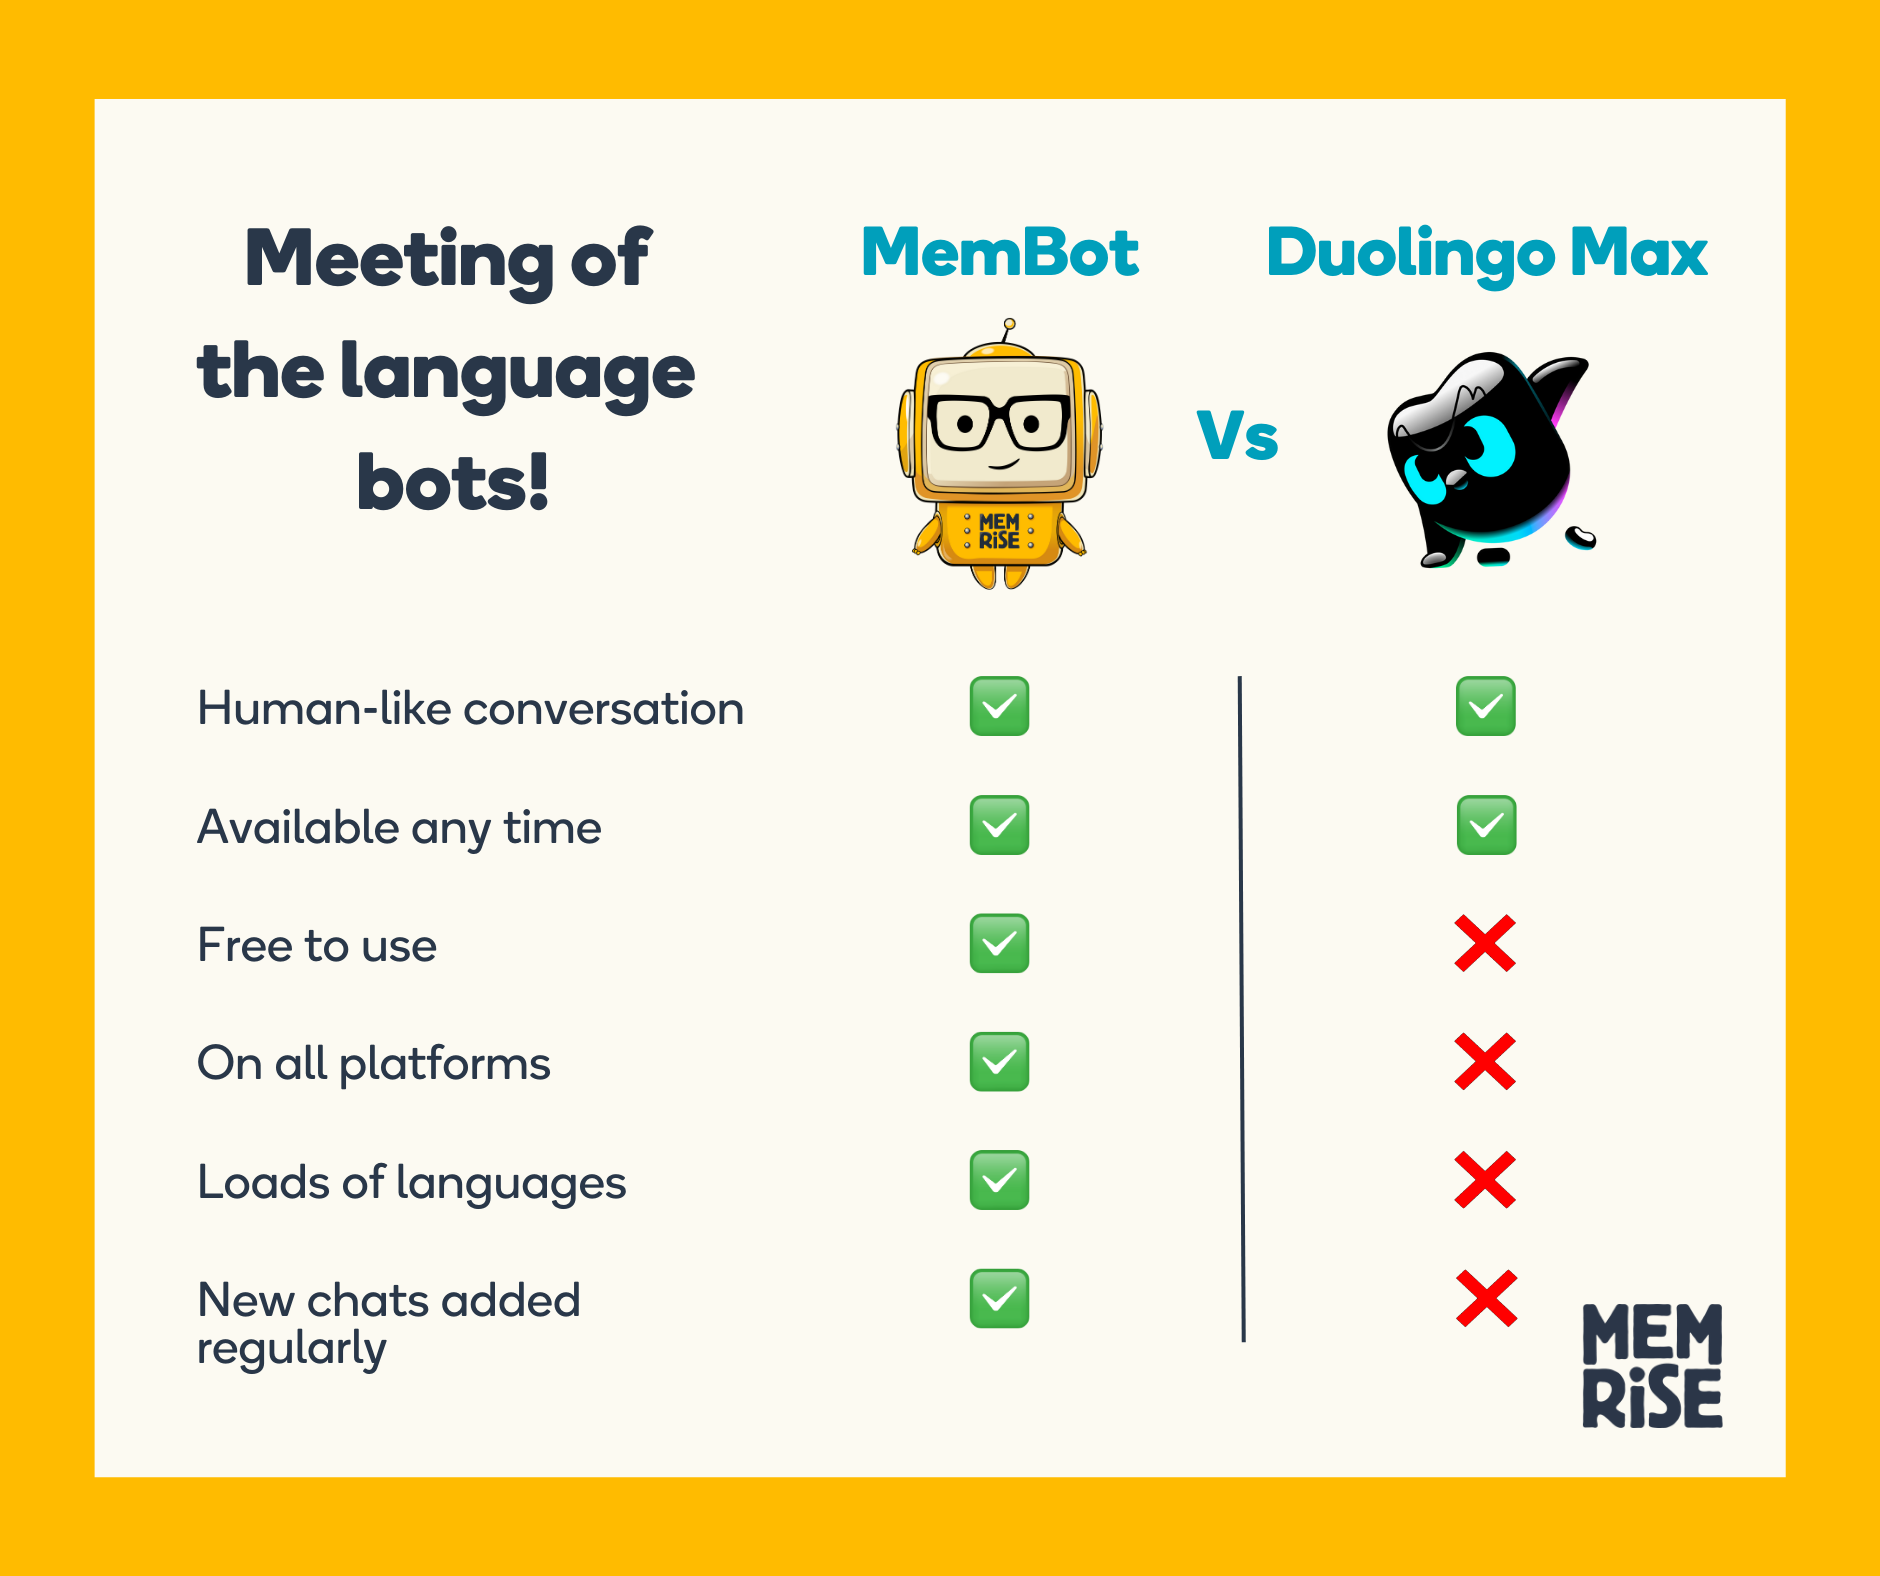 MemBot vs Duolingo Max